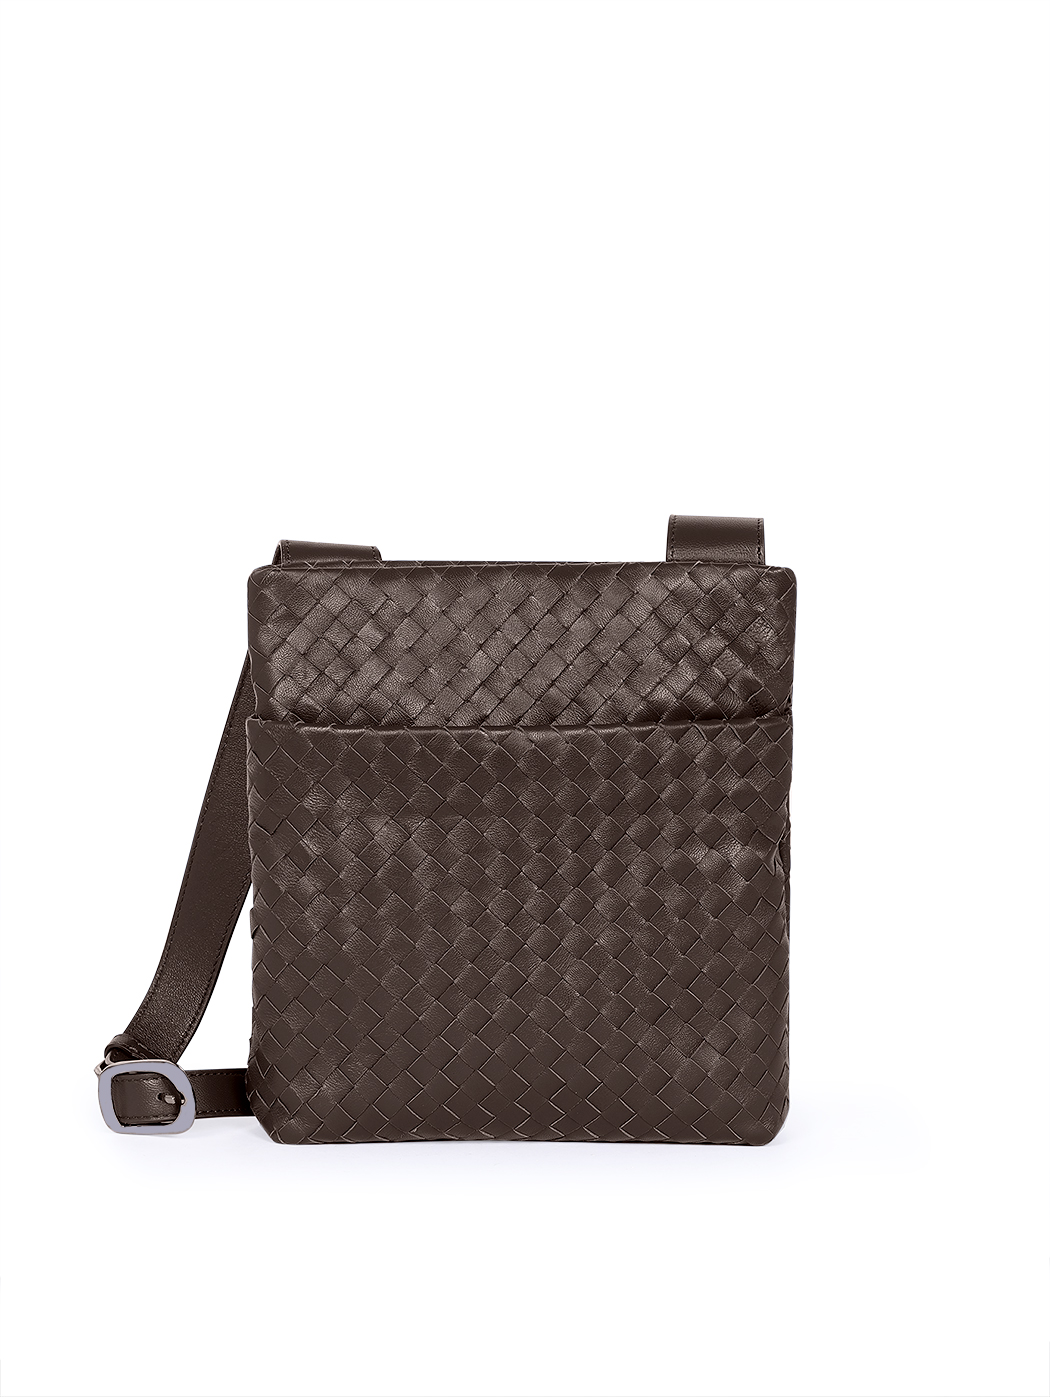 Плетеная мужская сумка кросс – боди коллекции  Intrecci коричневого цвета